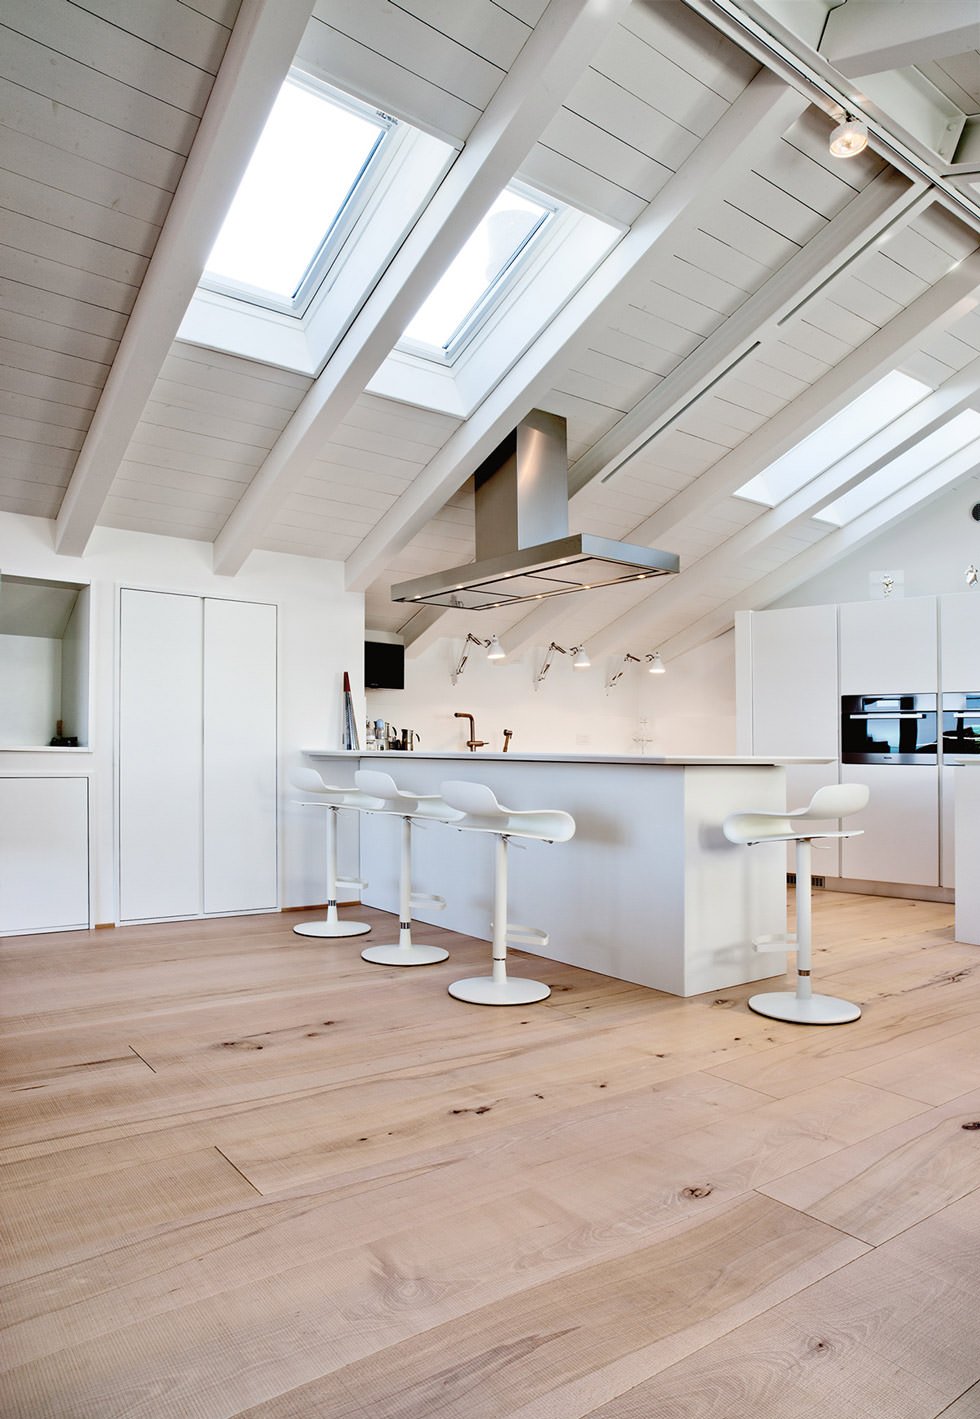 Idee per mansarde moderne ben illuminate - cucina open space con pareti, soffitti, arredi e mobili bianchi e pavimenti in legno chiaro per un ulteriore luminosità